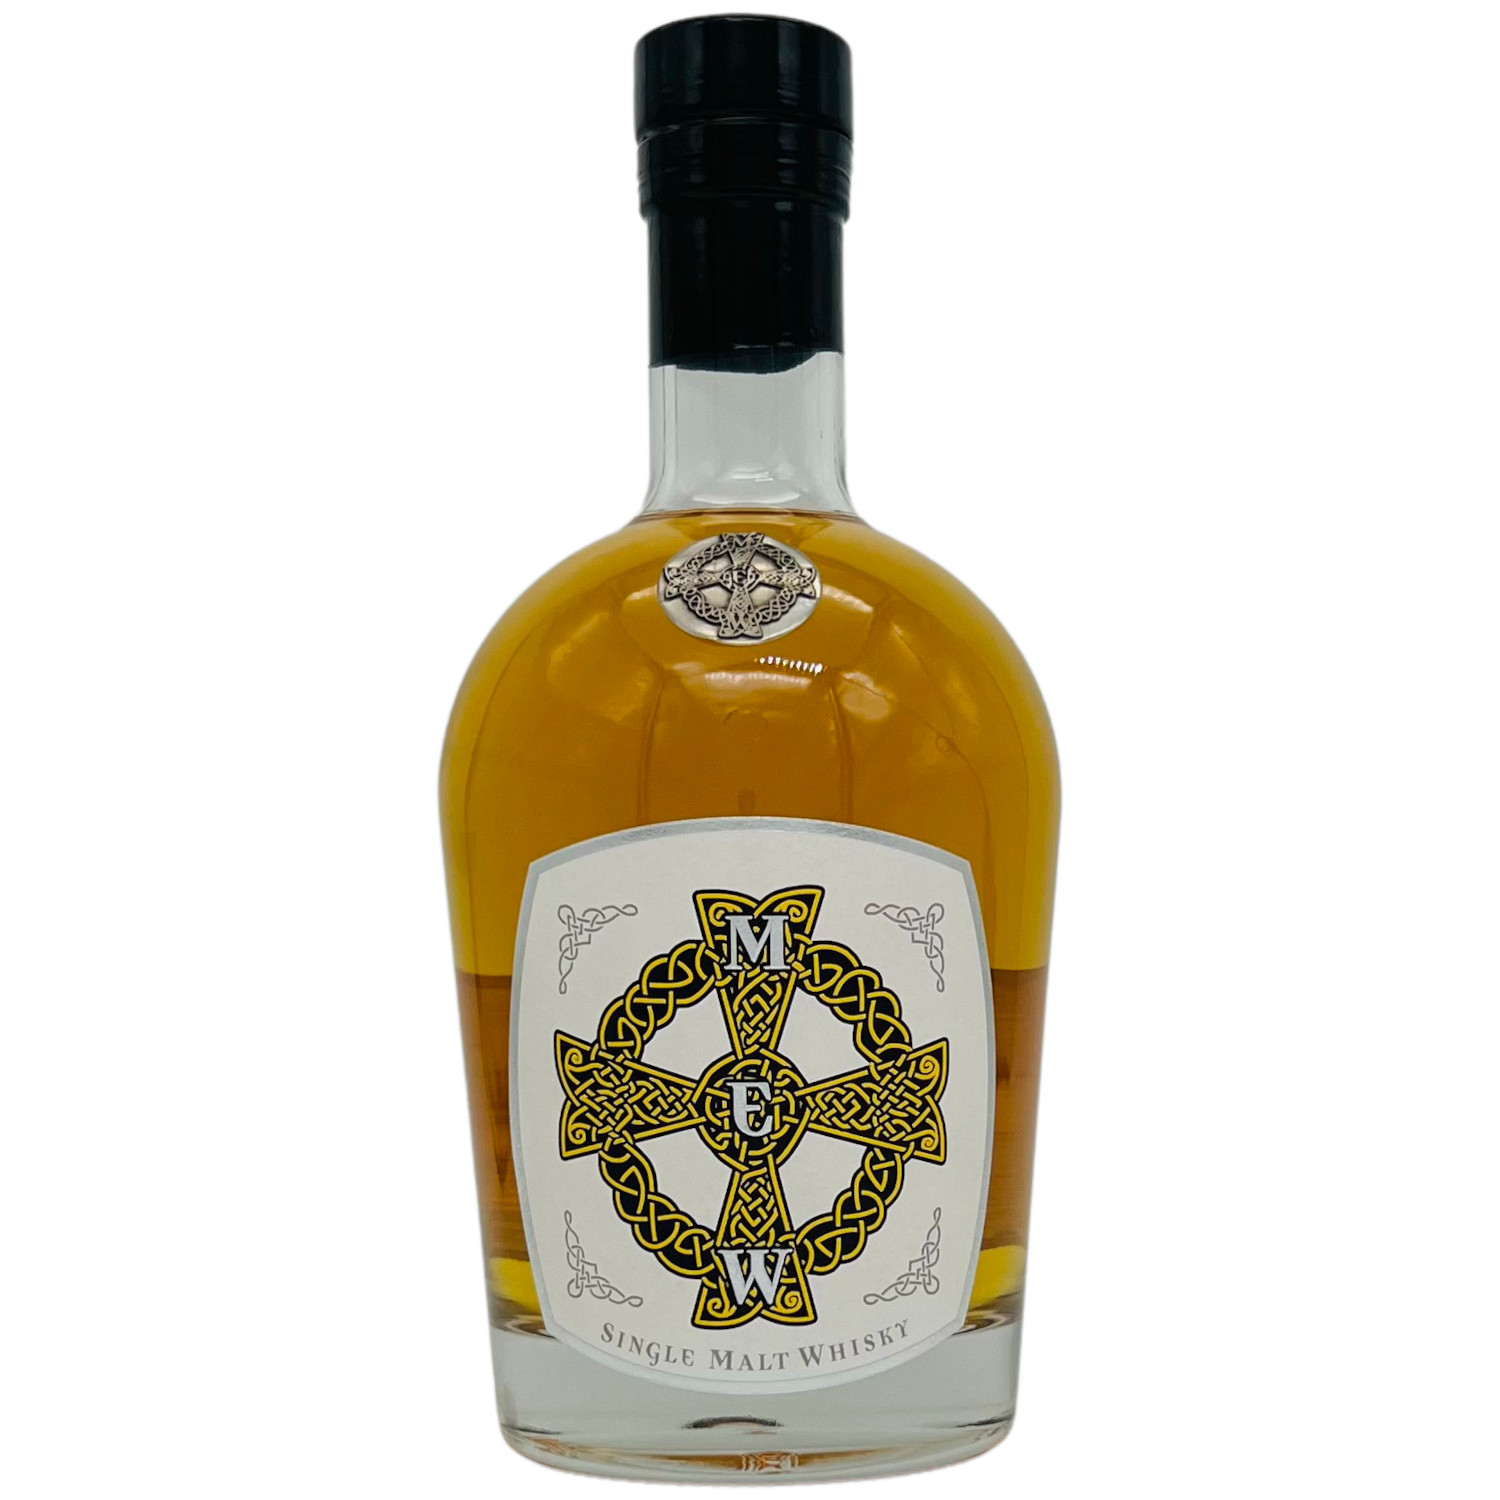 Wurth Whisky Rare Cask Edition 4 Jahre Virgin Oak Mizunara Finish 42%vol.